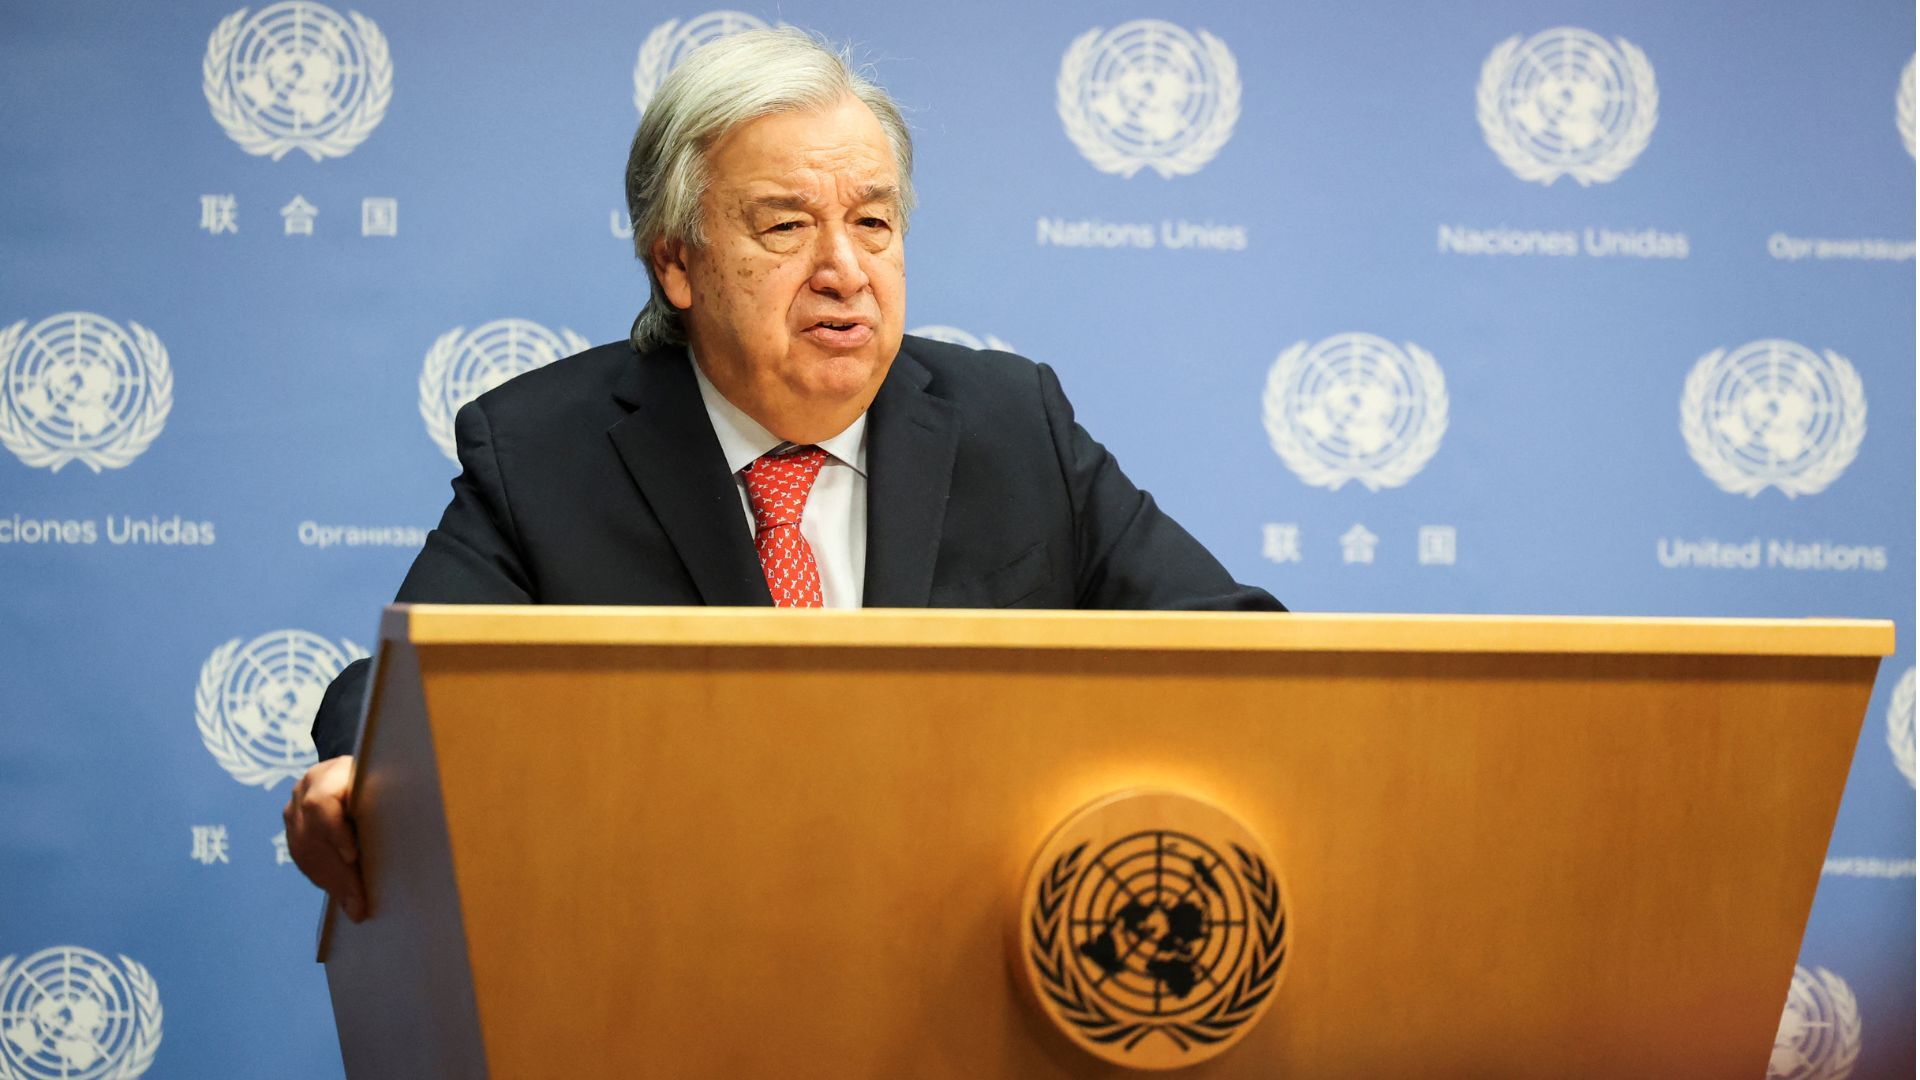 De secretaris-generaal van de Verenigde Naties activeert artikel 99 met betrekking tot Gaza  Nieuws over het Israëlisch-Palestijnse conflict